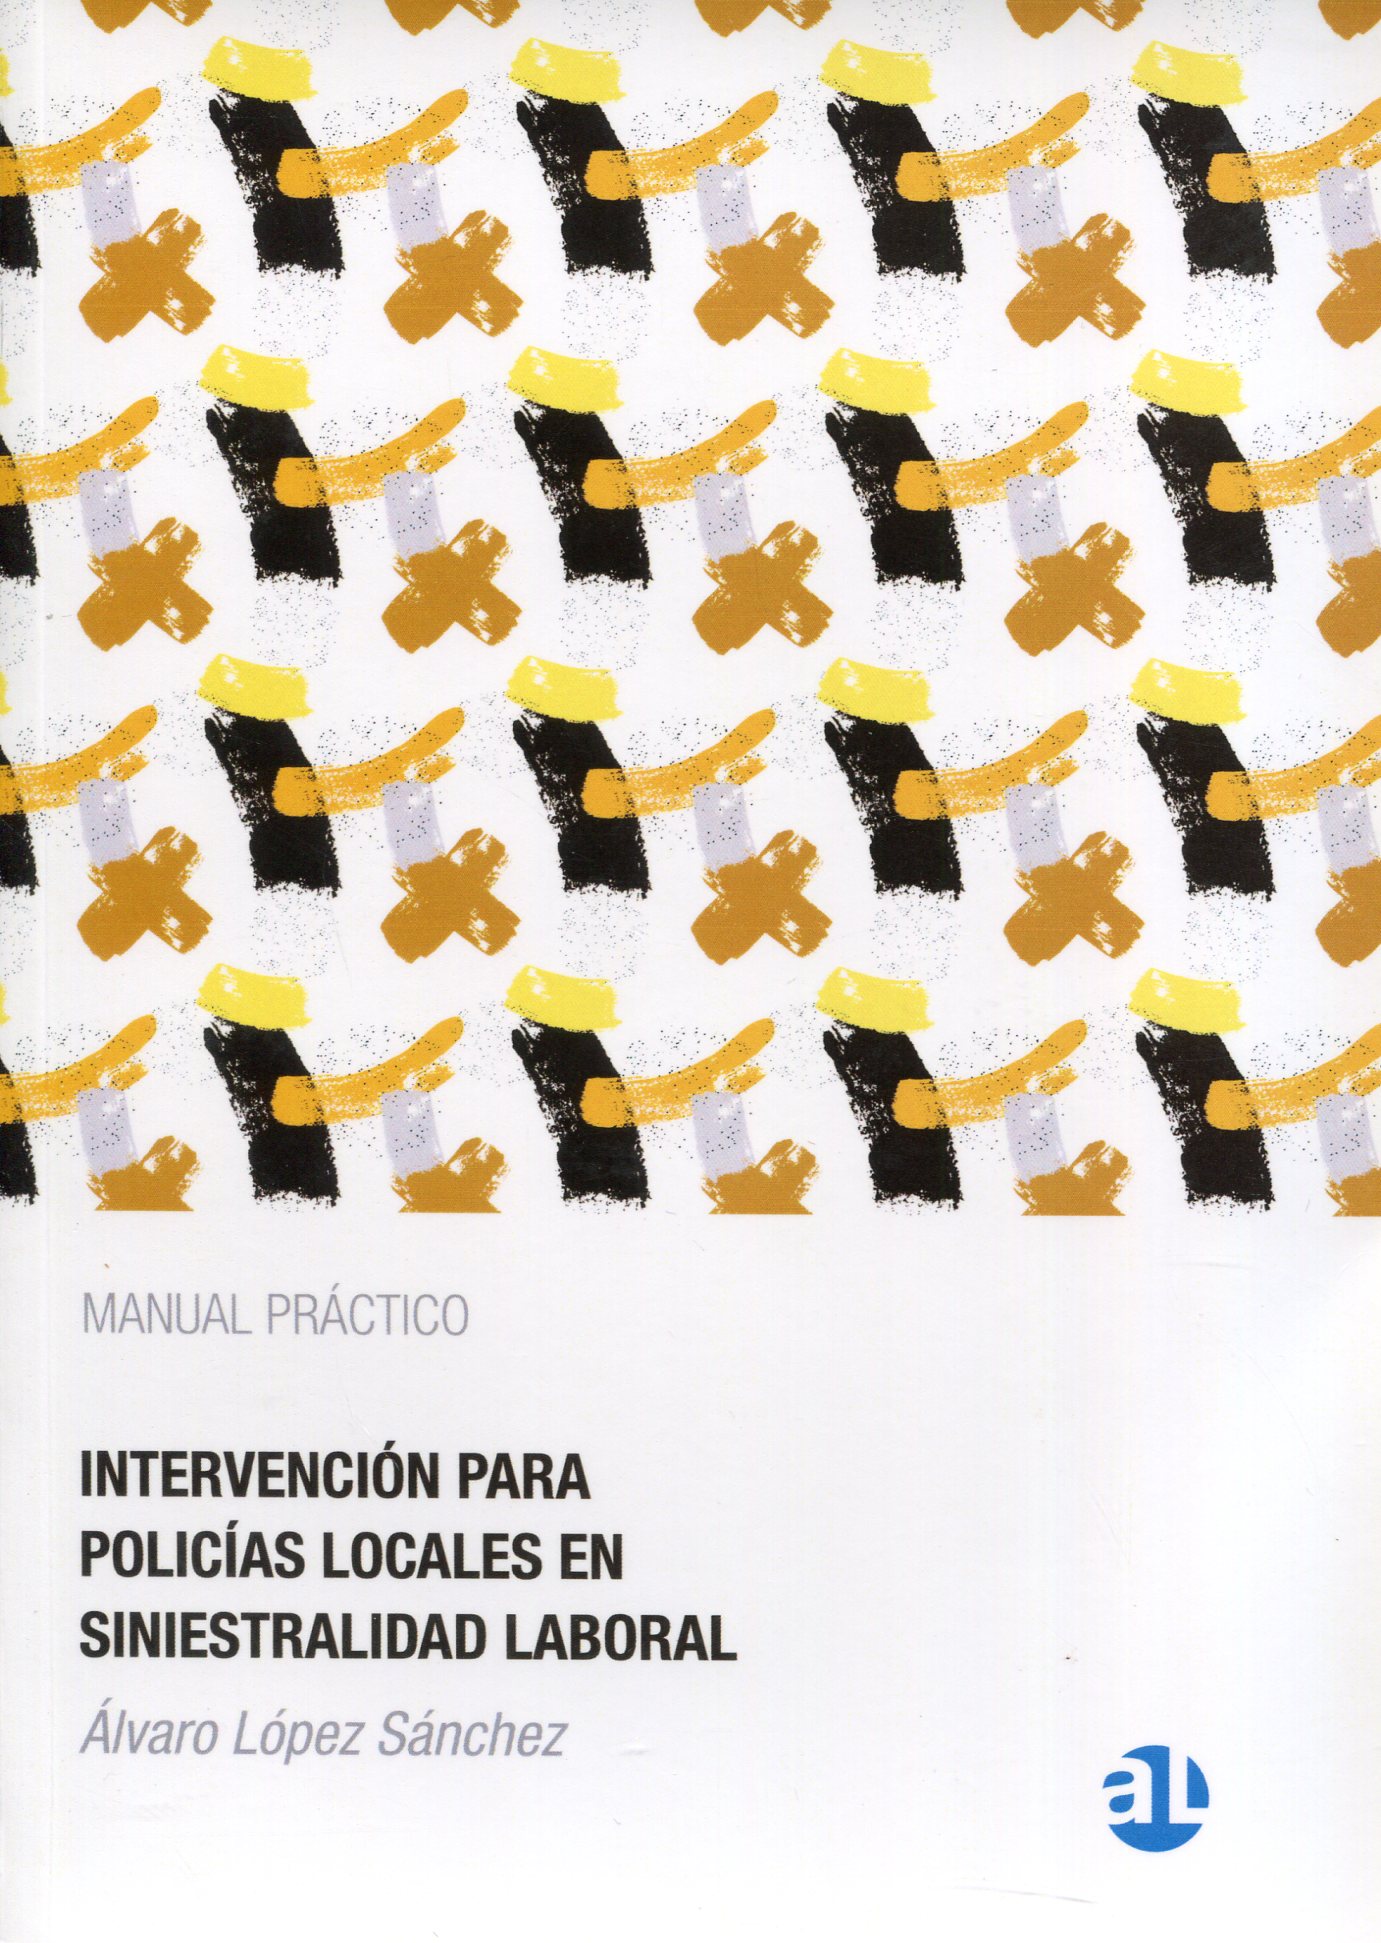 Manual práctico de intervención para policías locales en siniestralidad laboral. 9788409255153